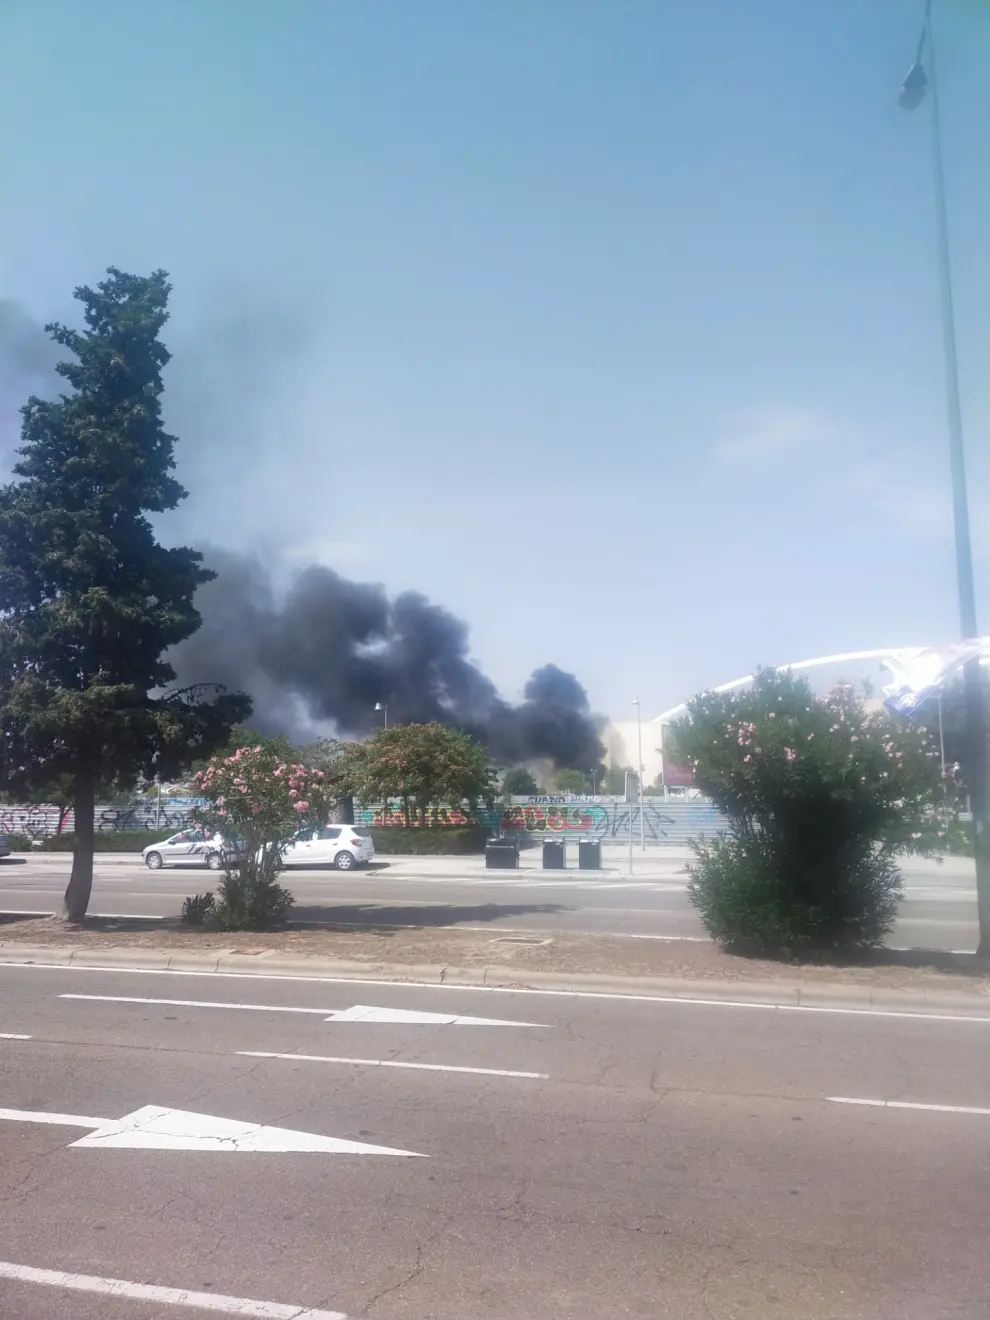 Imágenes del autobús de Avanza que ha ardido en Delicias